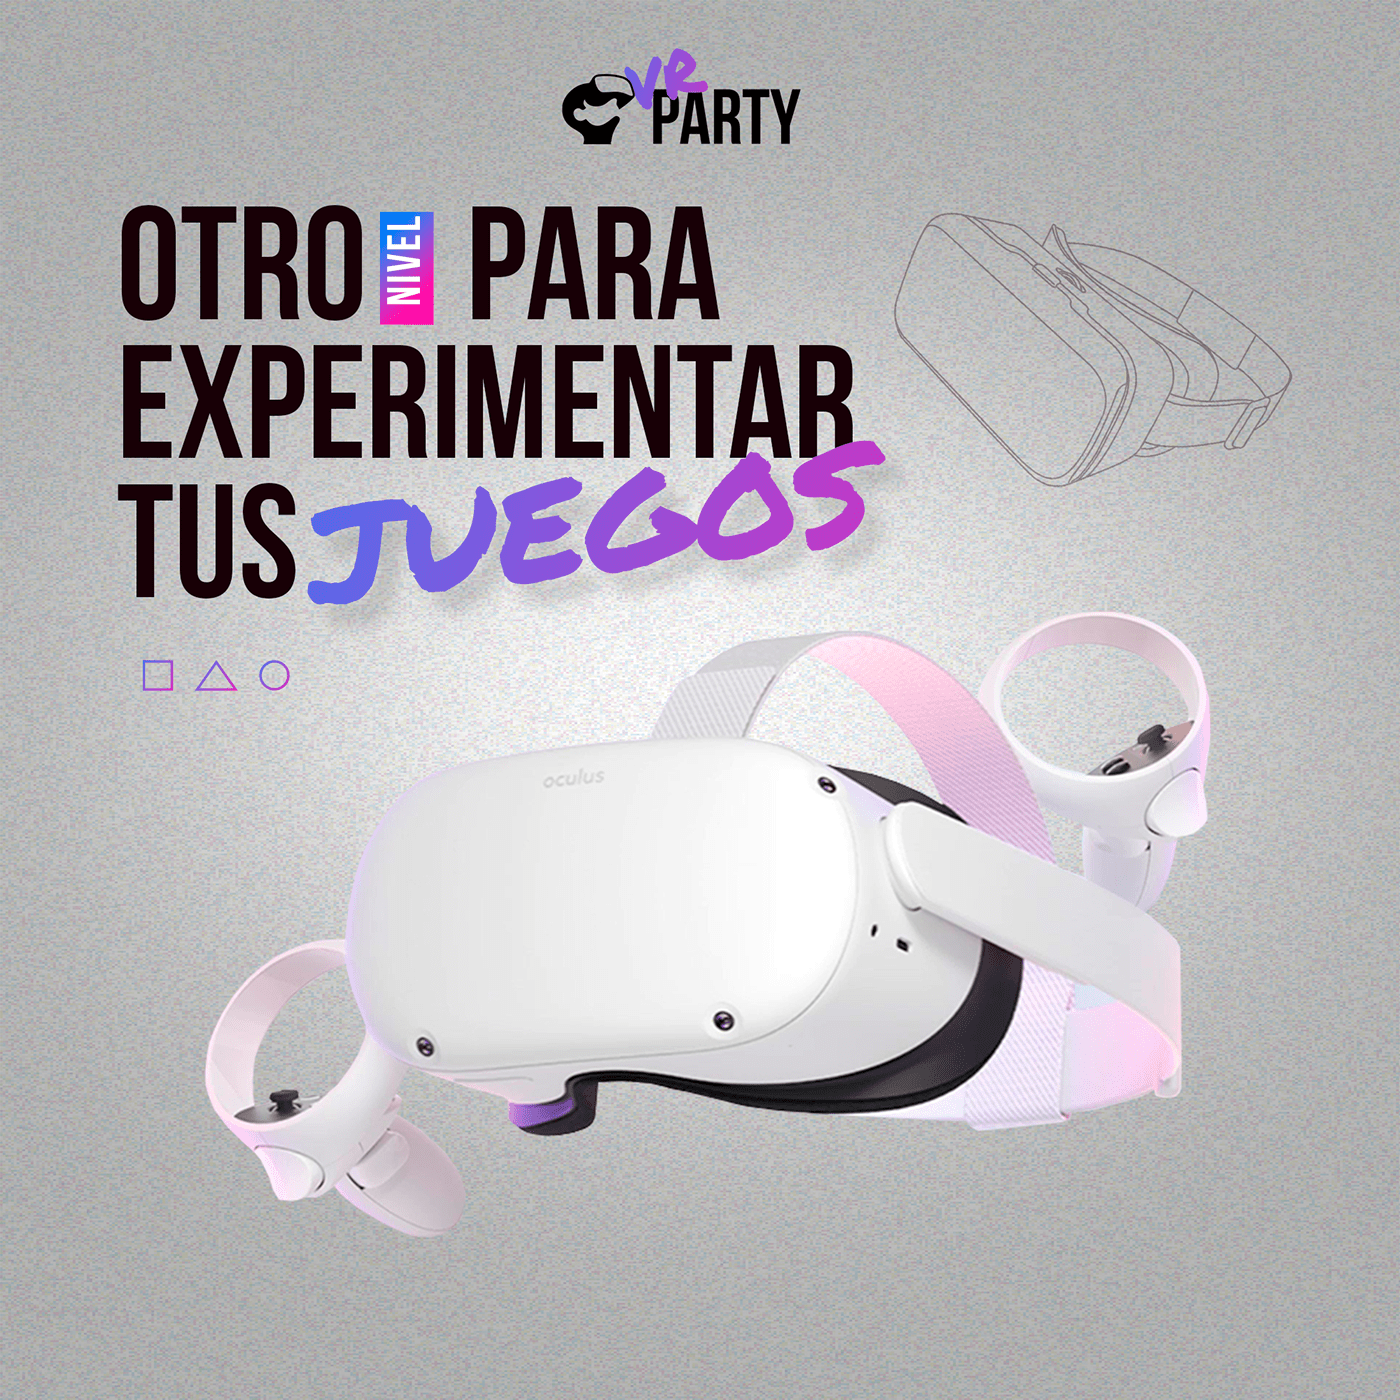 3D design Oculus party flyer vr